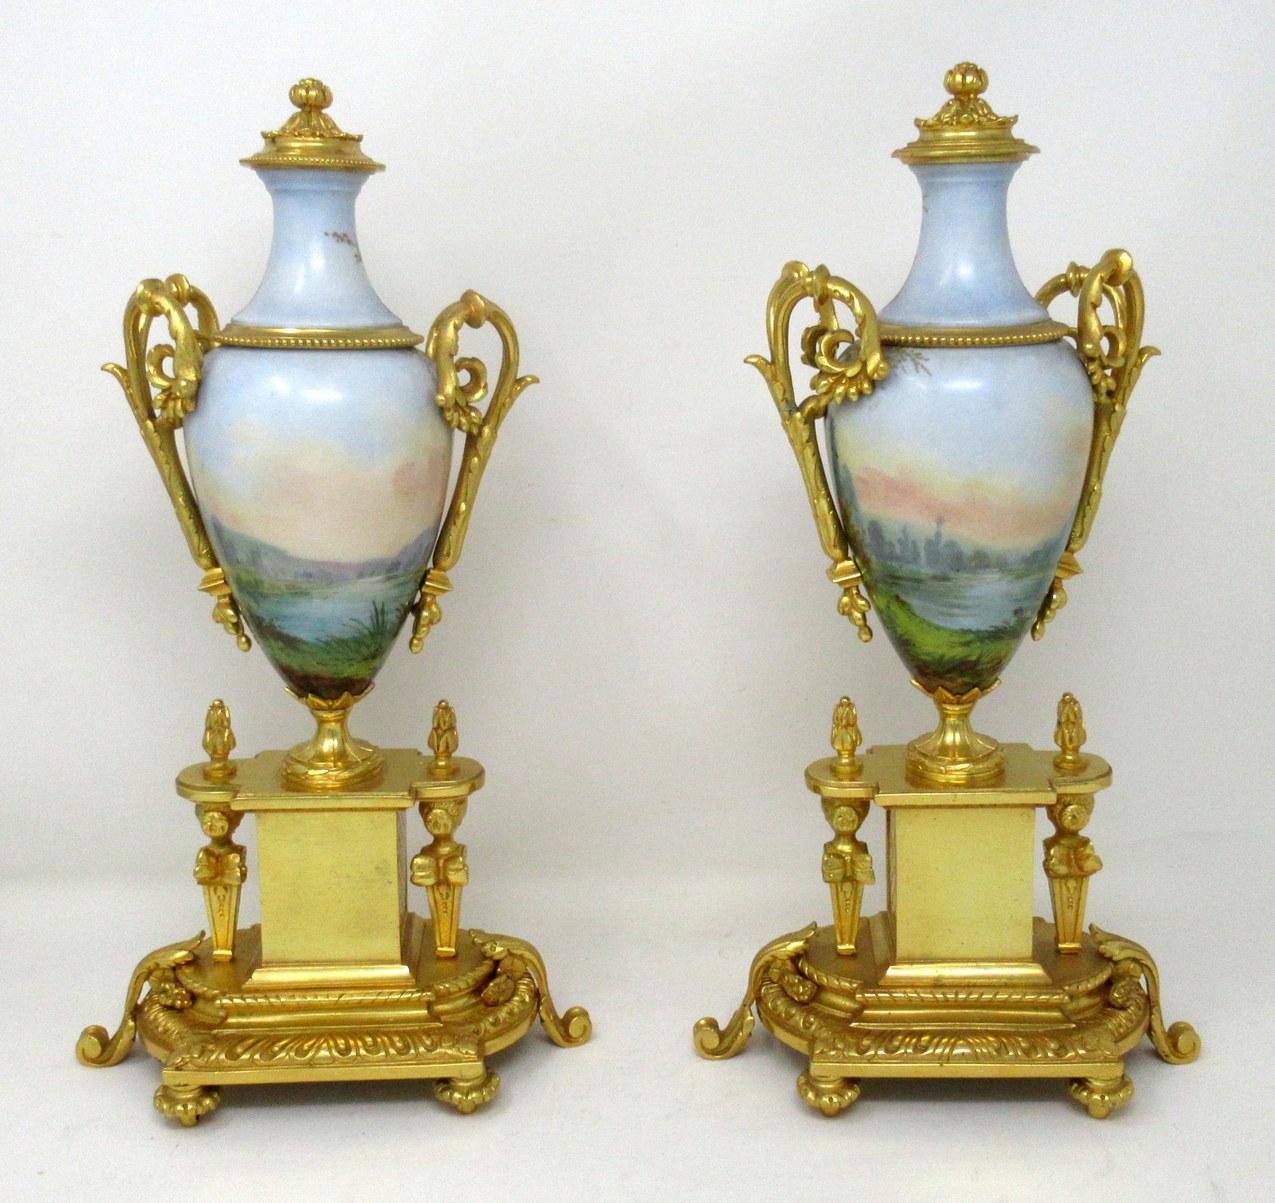 French Antique Pair of Sèvres Porcelain Watteau Scene Gilt Bronze Landscape Urns Vases